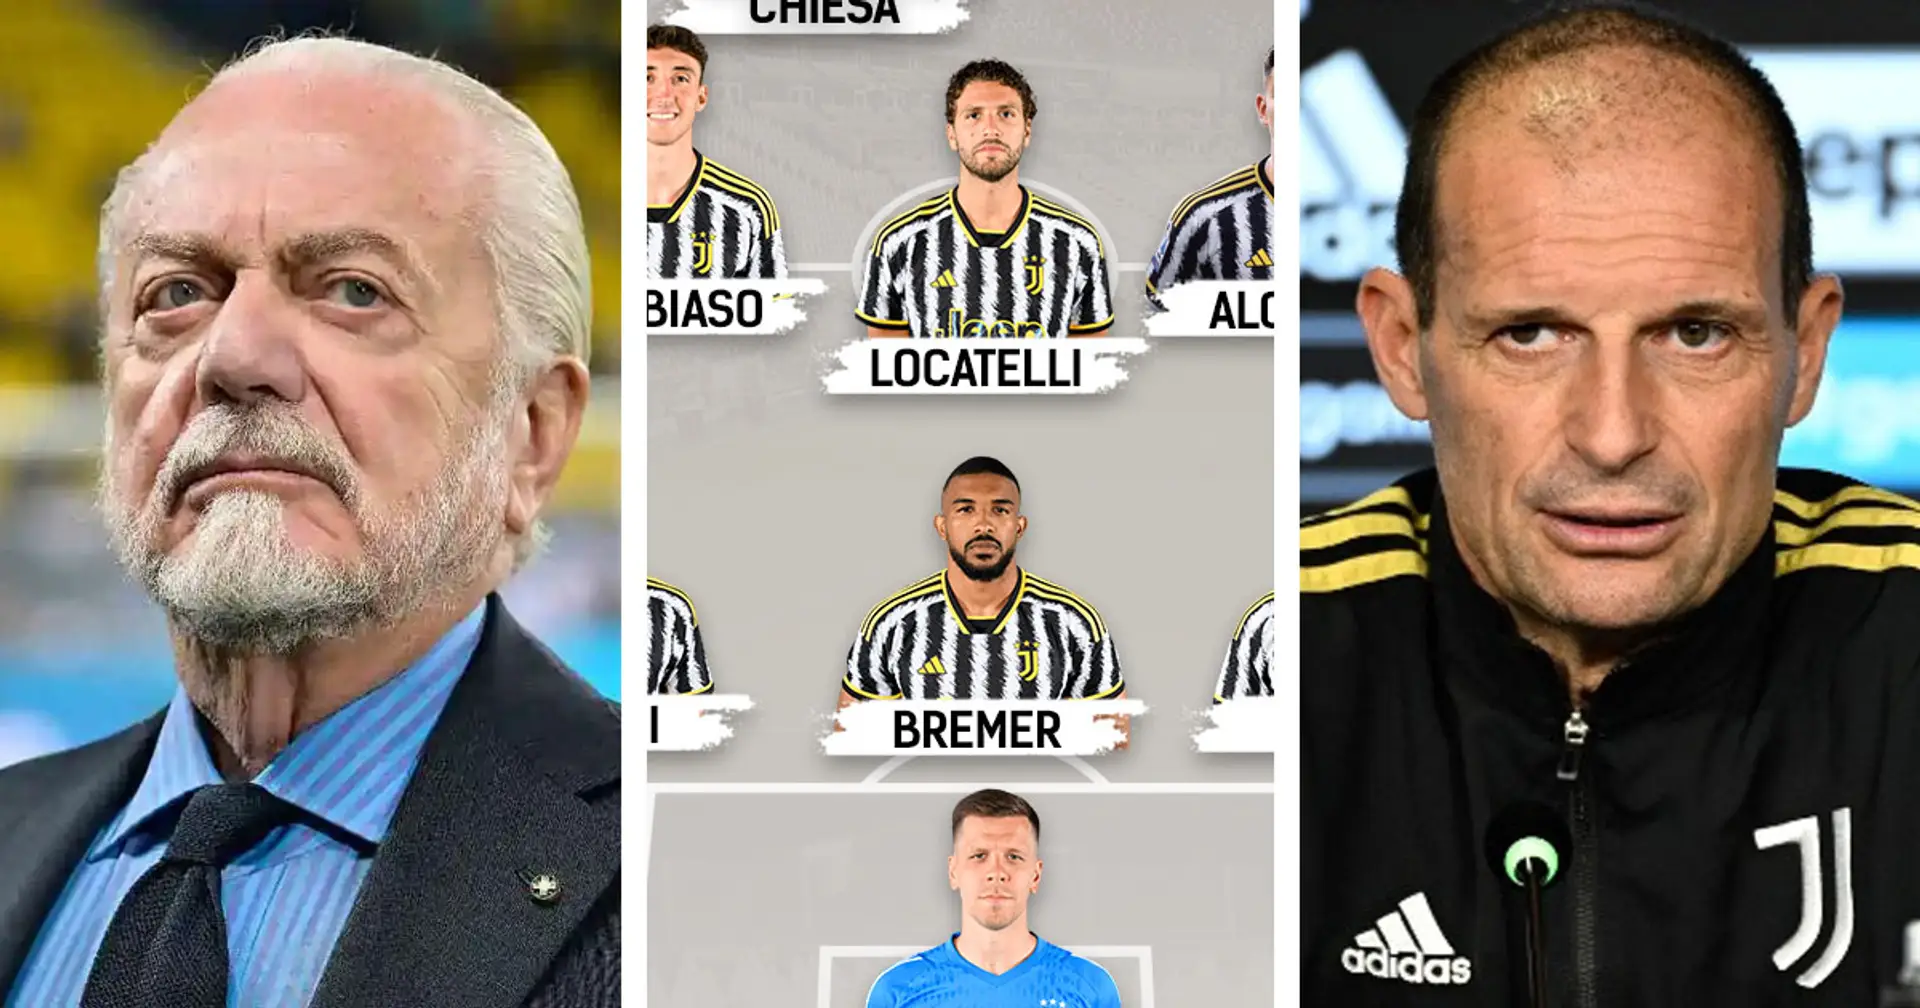 Le probabili formazioni di Napoli-Juventus e altre 3 storie sui Bianconeri che potresti esserti perso